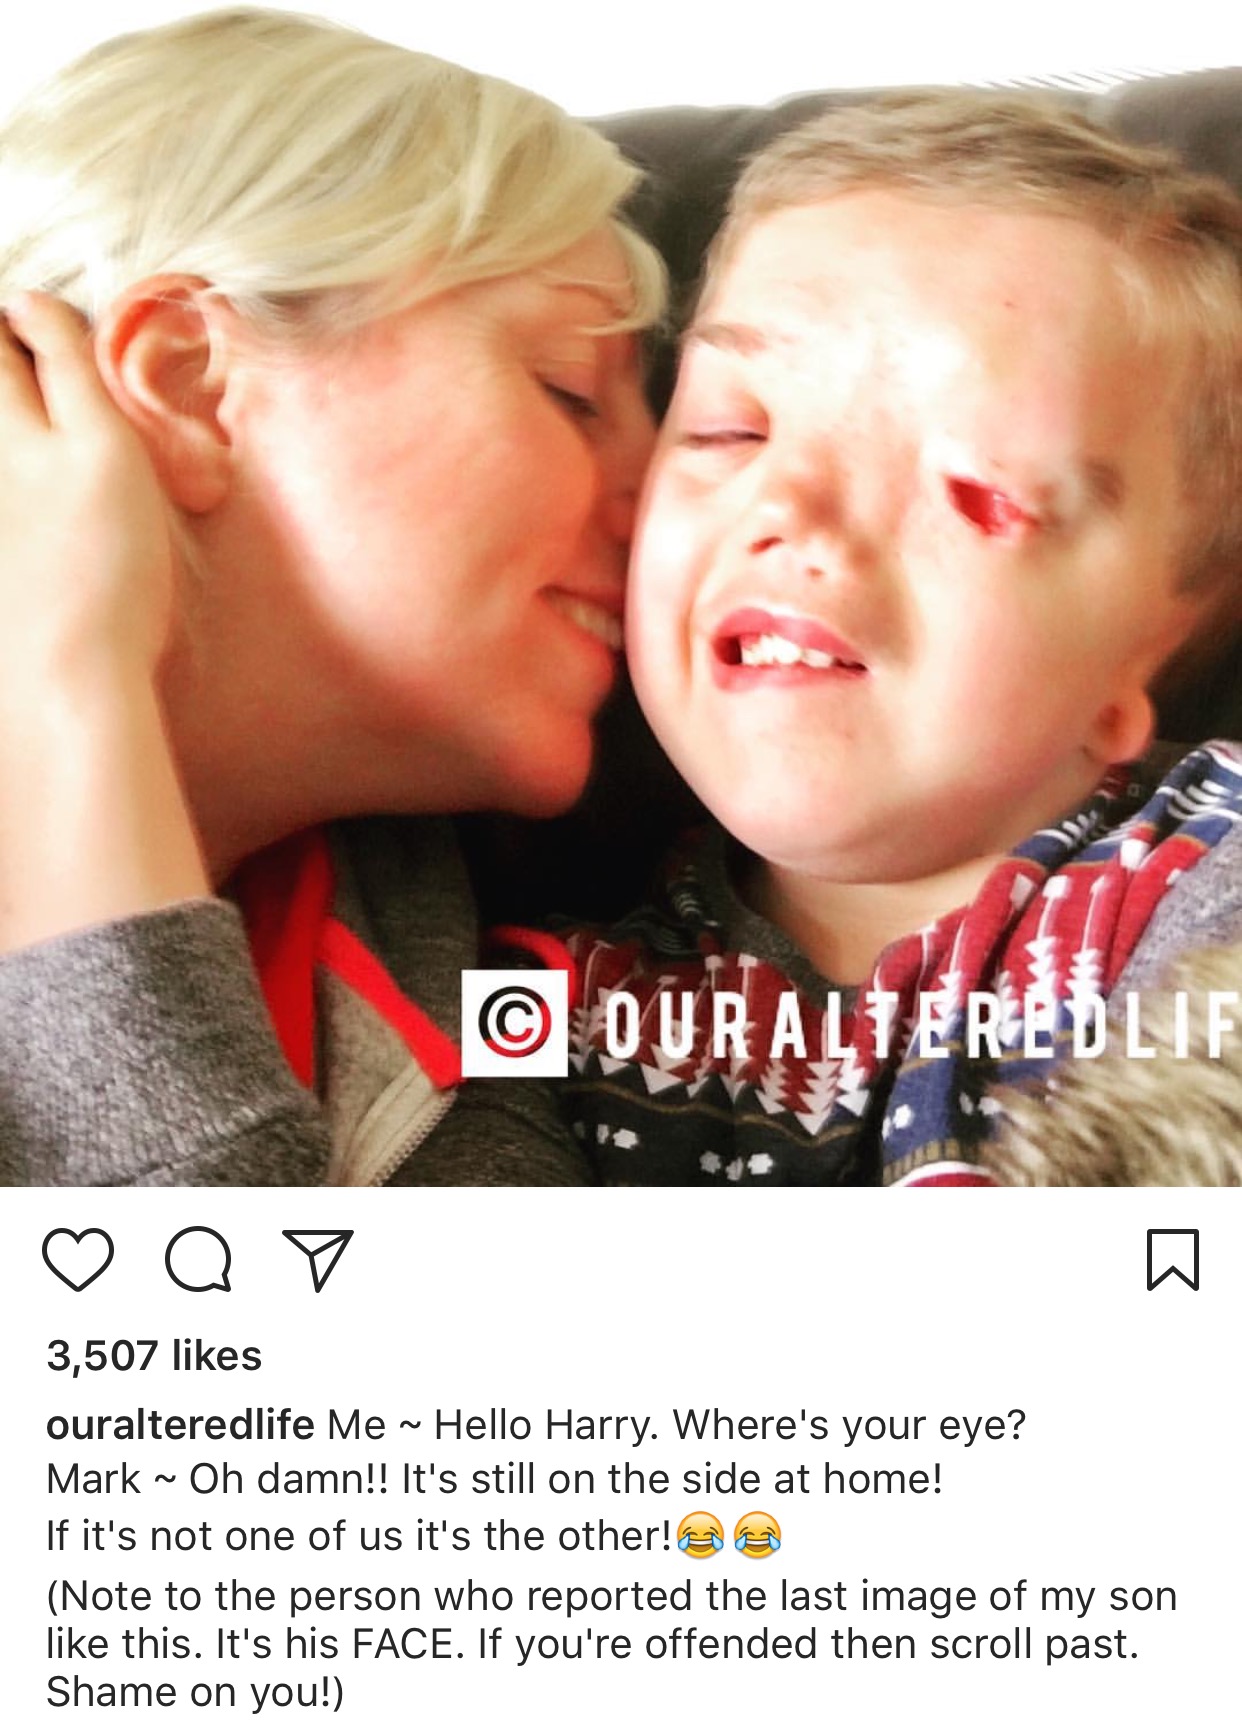 Instagram, fotoğrafını kaldırdığı çocuğun ailesinden özür diledi